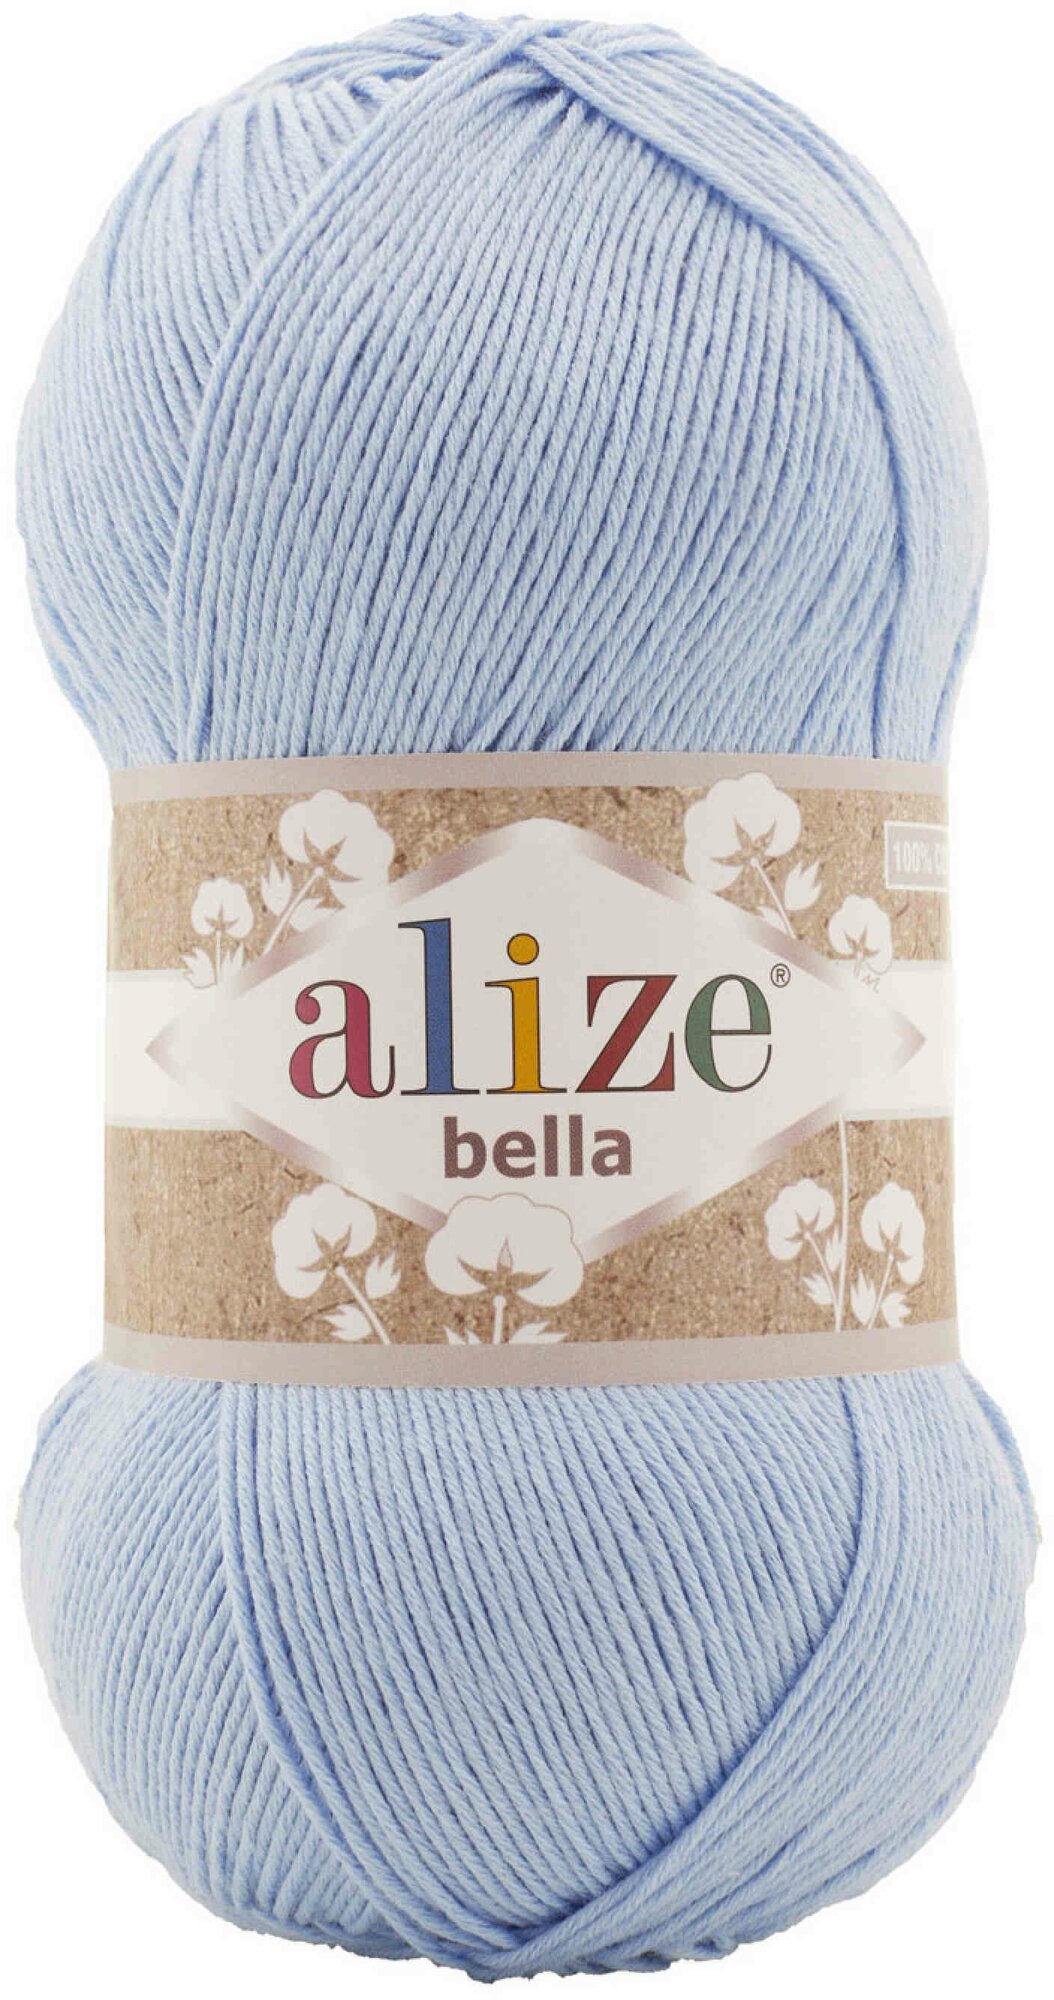 Пряжа Alize Bella 100 голубой (40), 100%хлопок, 360м, 100г, 2шт